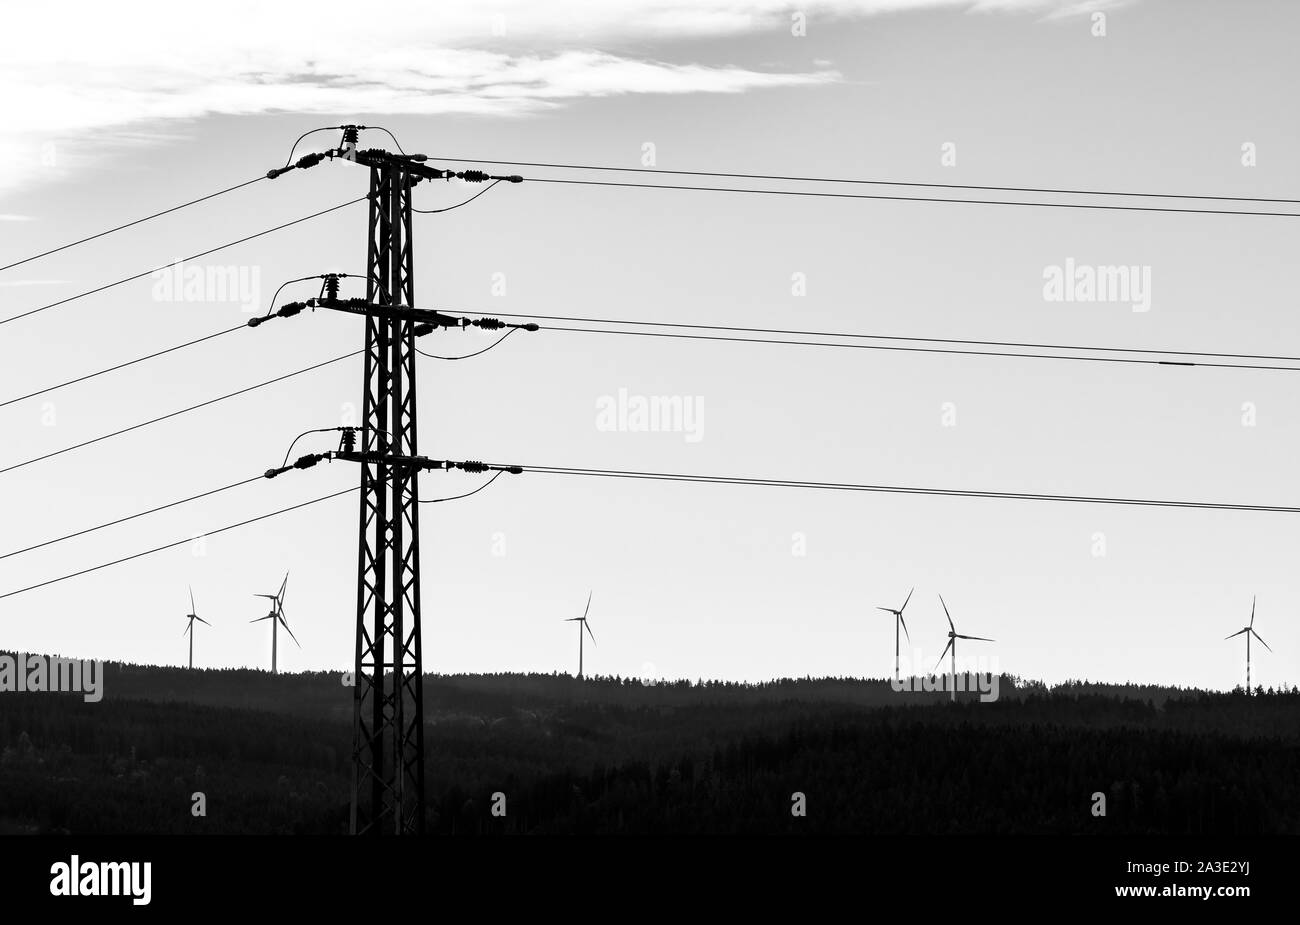 Stromversorgungsnetz Turm und Gruppe von Windenergieanlagen. Schwarz-weiße Silhouette. Strom Pylon und alternative erneuerbare Energiequellen in der Landschaft. Stockfoto